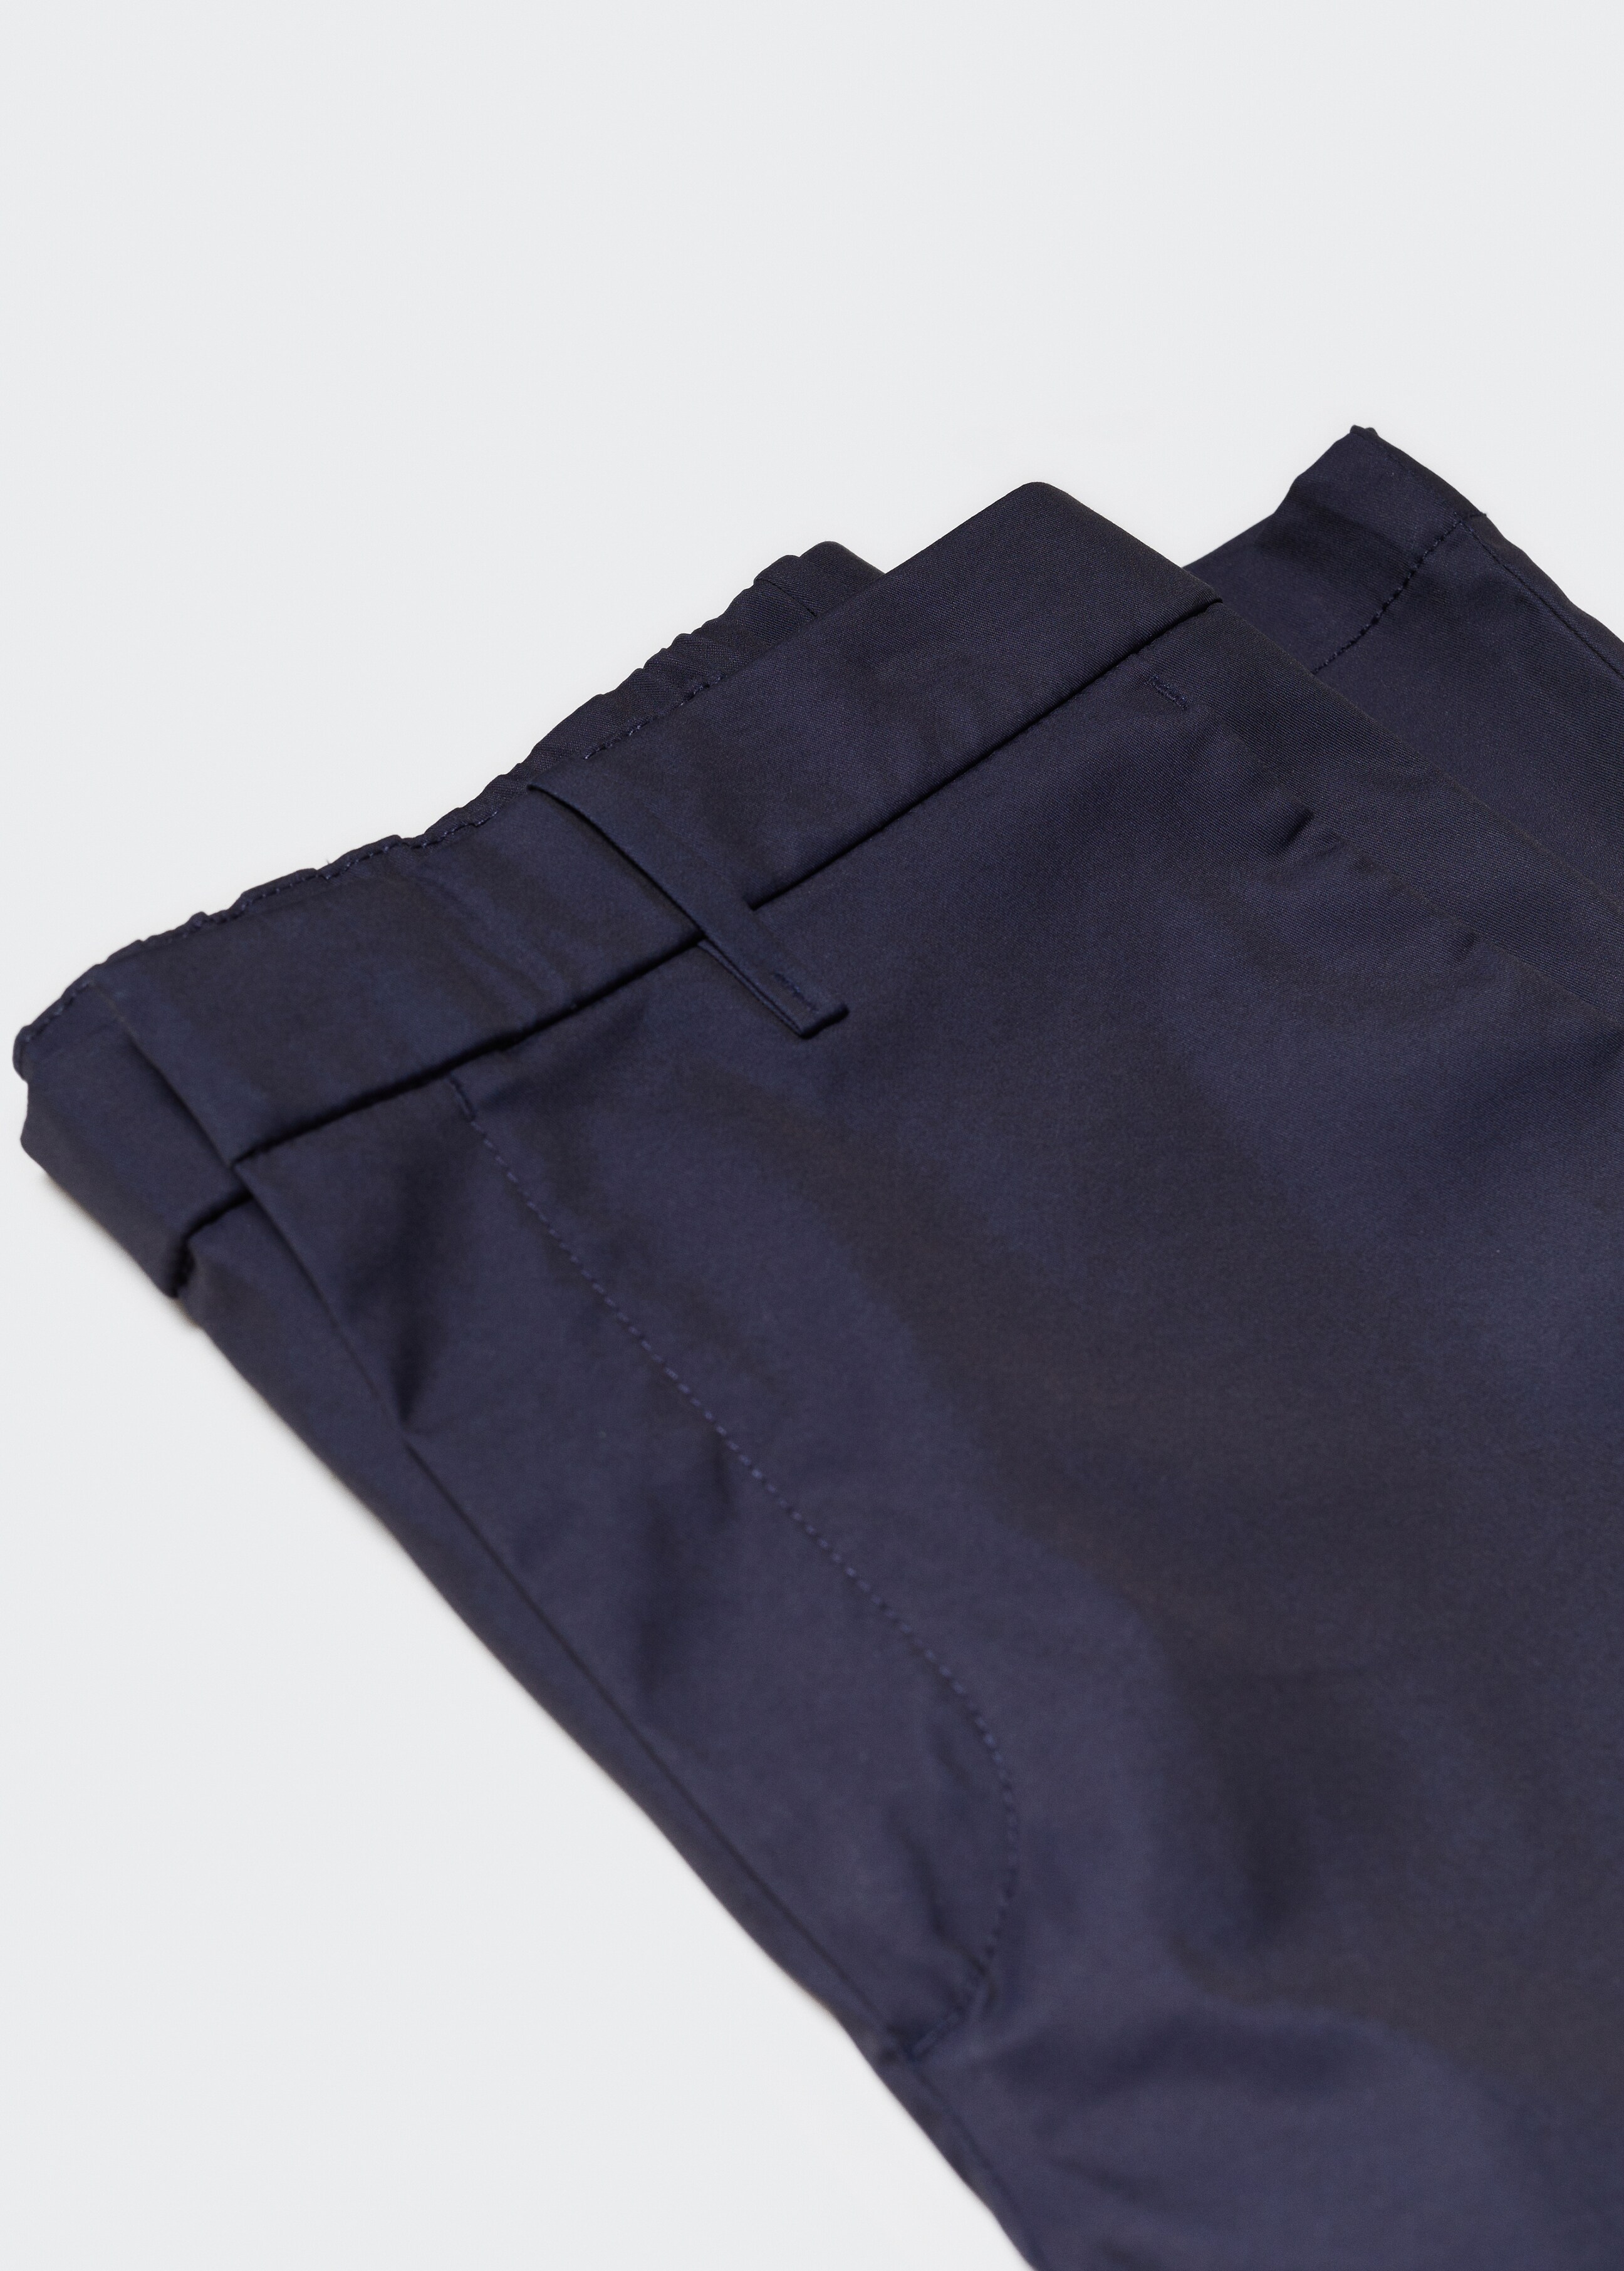 Pantalón slim fit algodón - Detalle del artículo 8